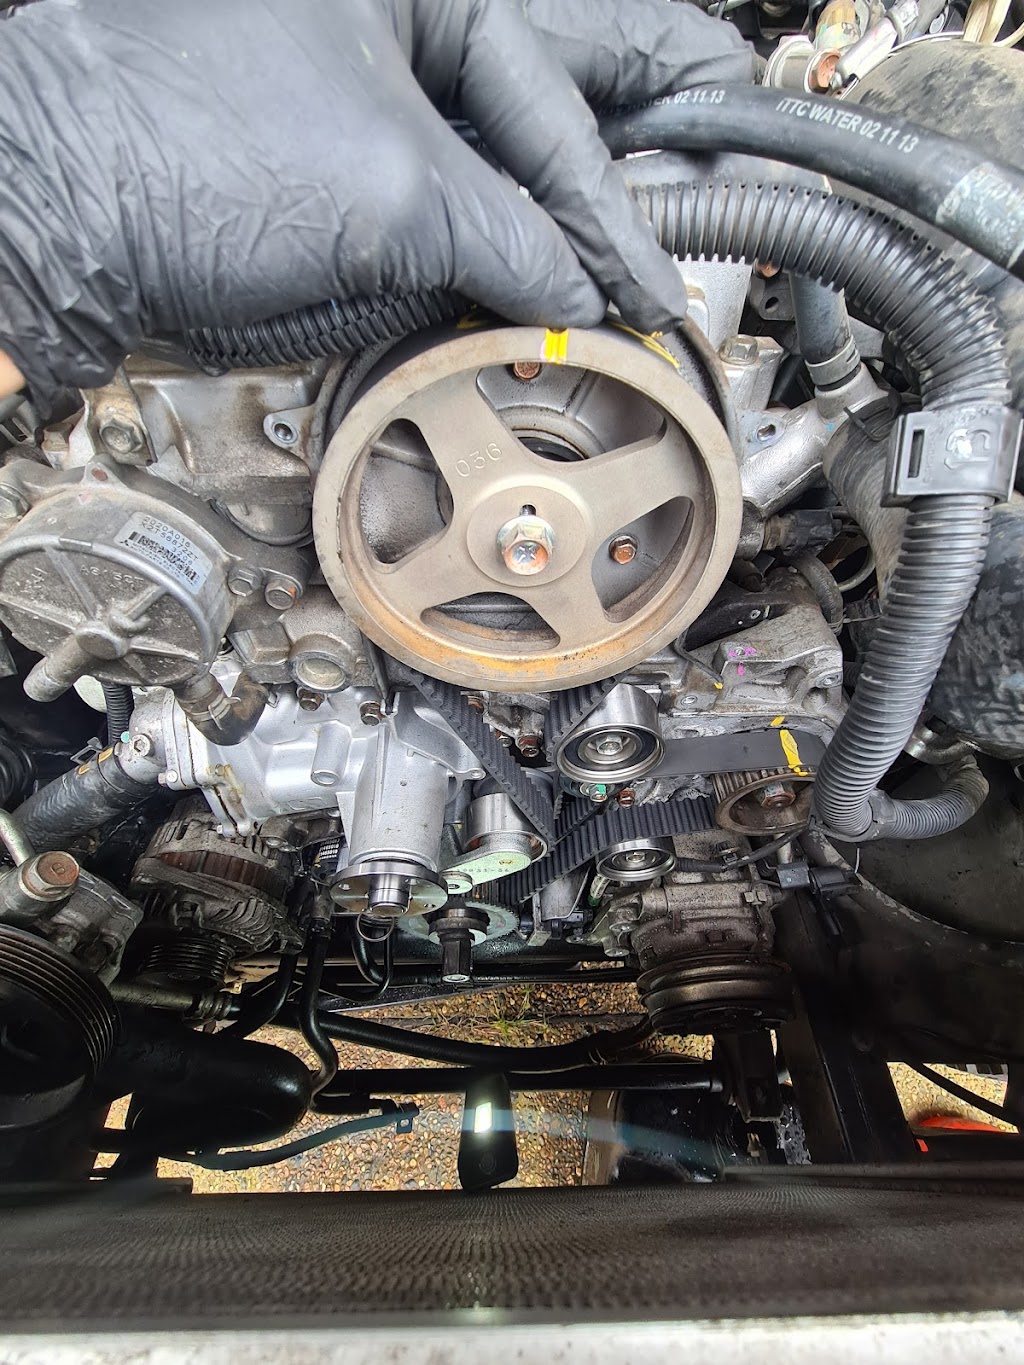 Wolf Mobile Mechanical | car repair | 28 Greta St, Telarah NSW 2320, Australia | 0498113332 OR +61 498 113 332